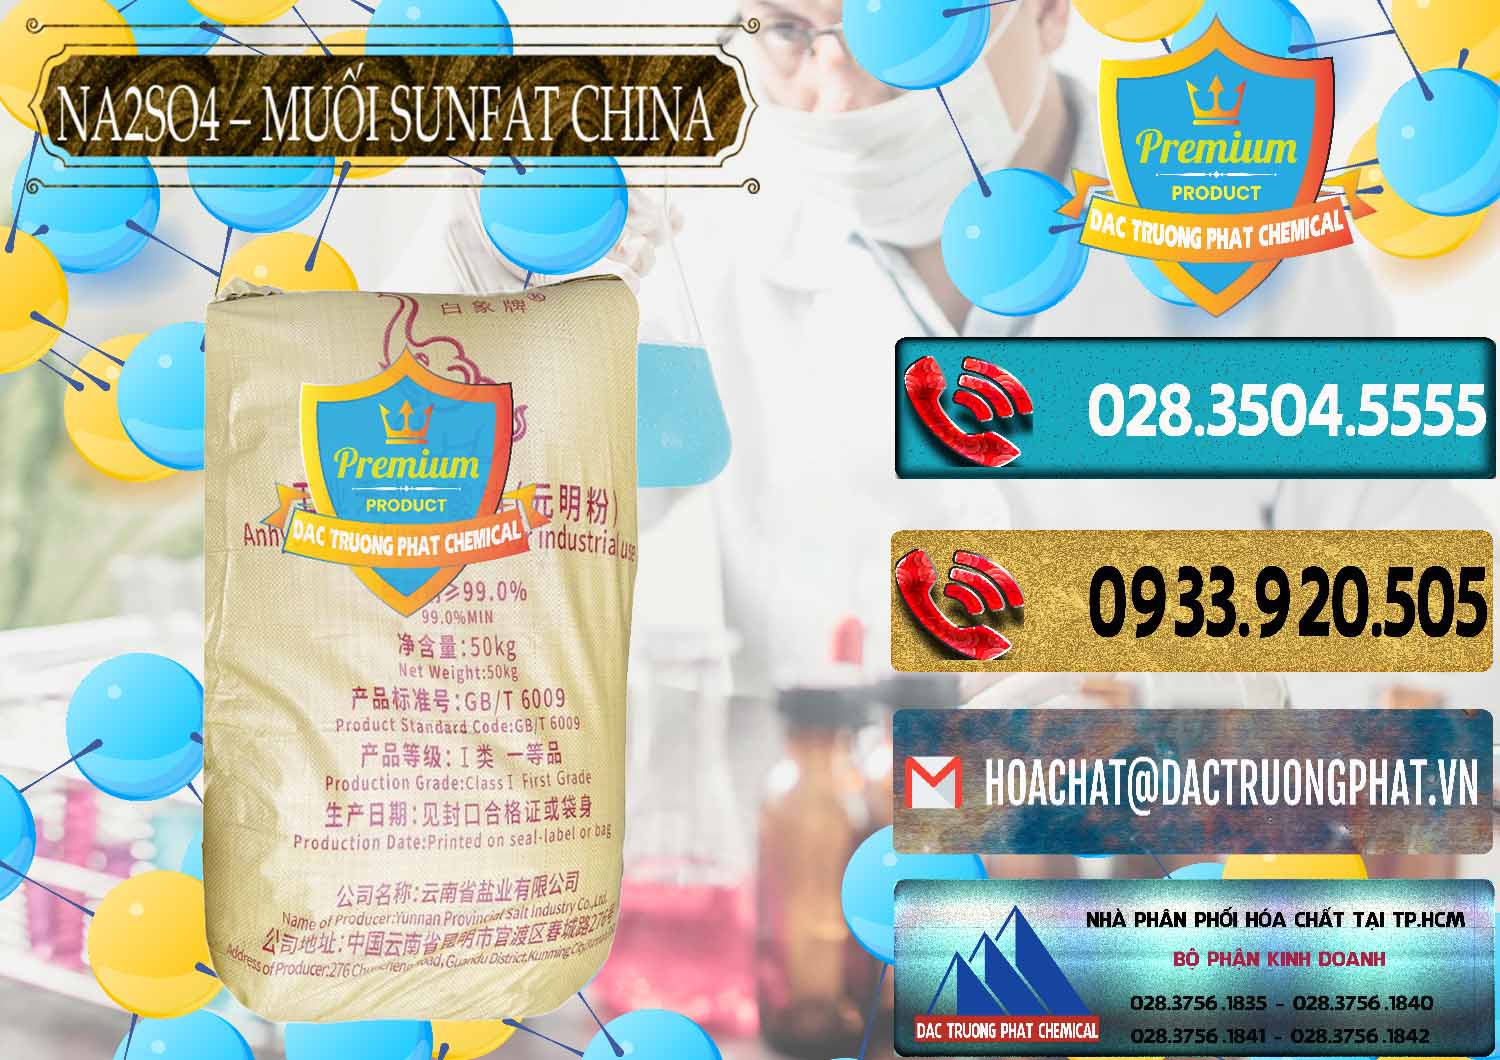 Nơi chuyên cung cấp & bán Sodium Sulphate - Muối Sunfat Na2SO4 Logo Con Voi Trung Quốc China - 0409 - Công ty cung cấp và phân phối hóa chất tại TP.HCM - hoachatdetnhuom.com